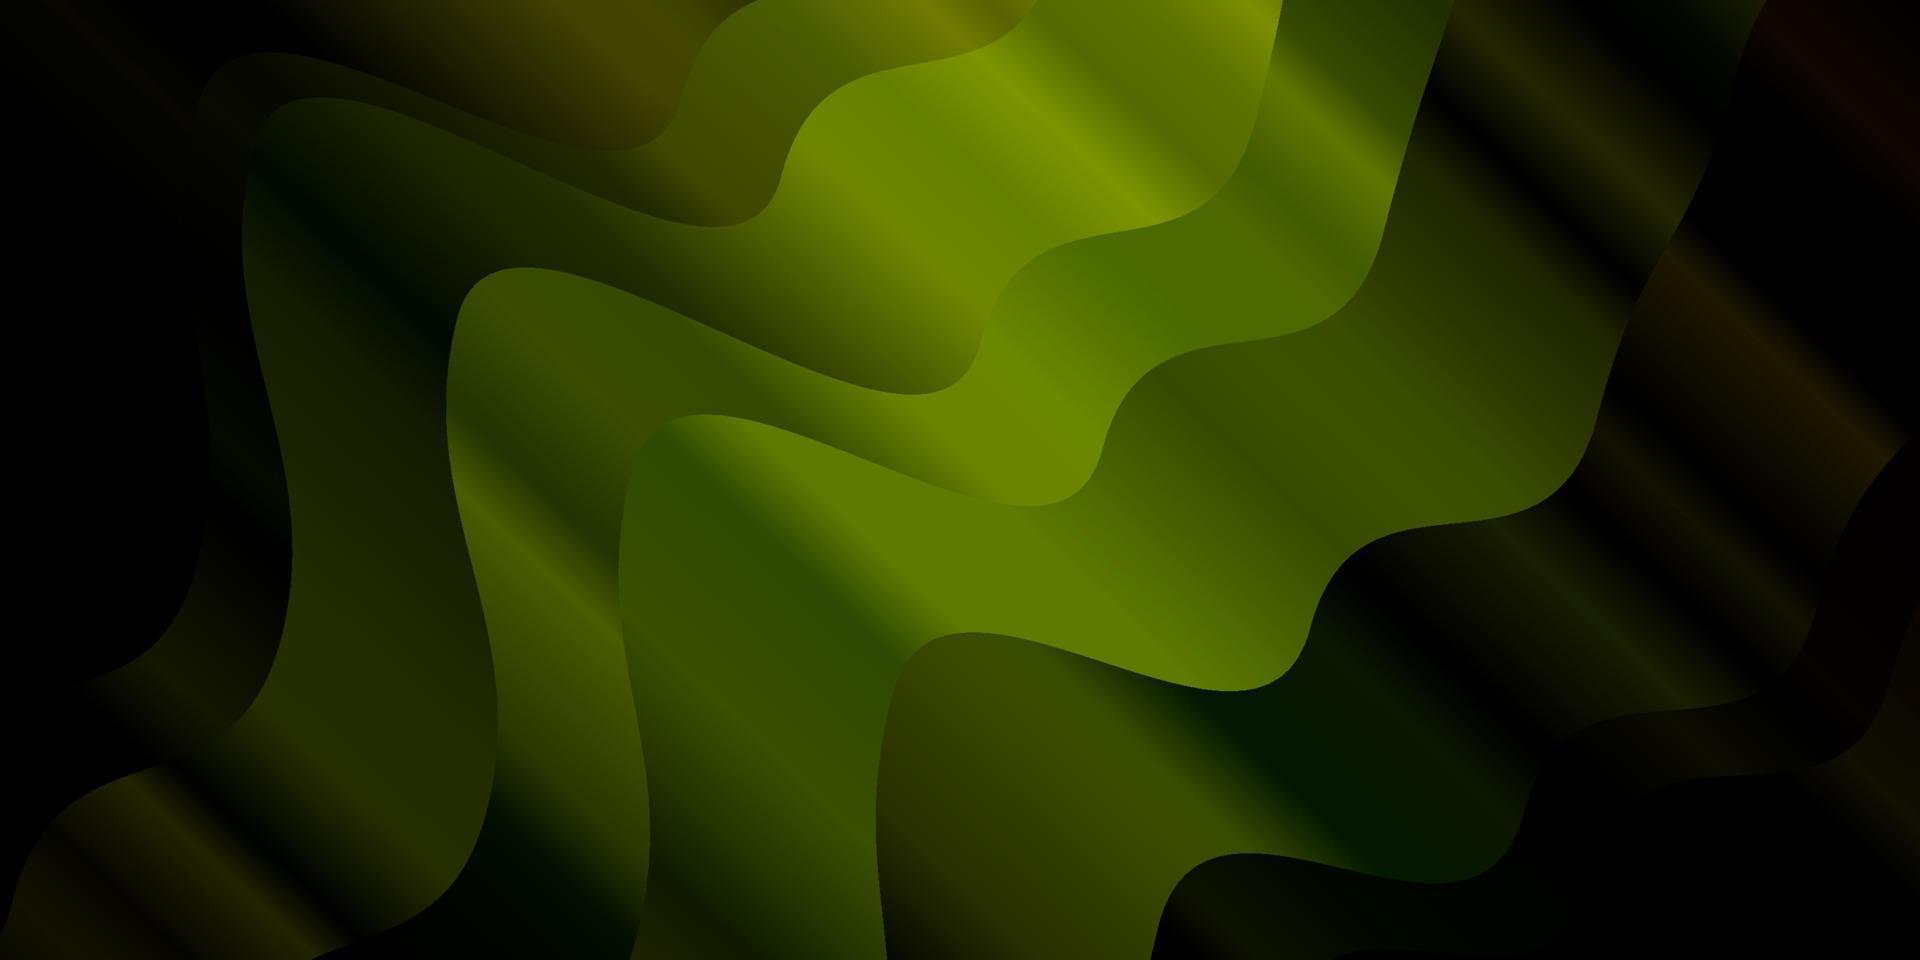 texture vecteur vert foncé avec des lignes ironiques.